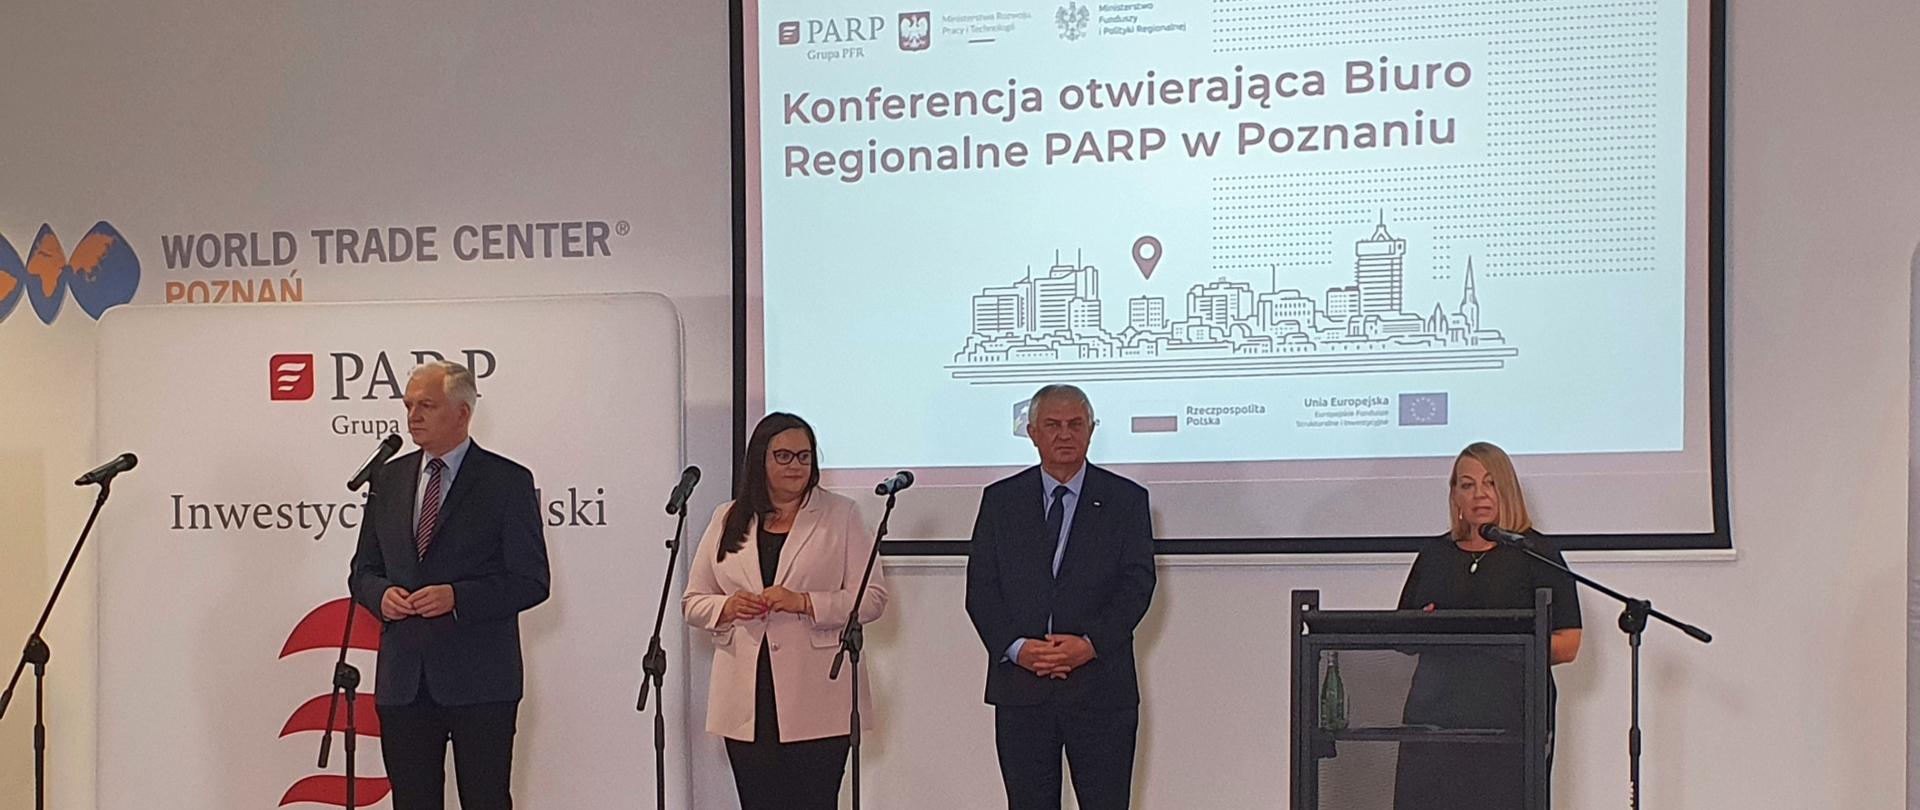 uczestnicy spotkania stoją na scenie, do mikrofonu mówi prezes PARP, za uczestnikami napis konferencja otwierająca Biuro Regionalne PARP w Poznaniu